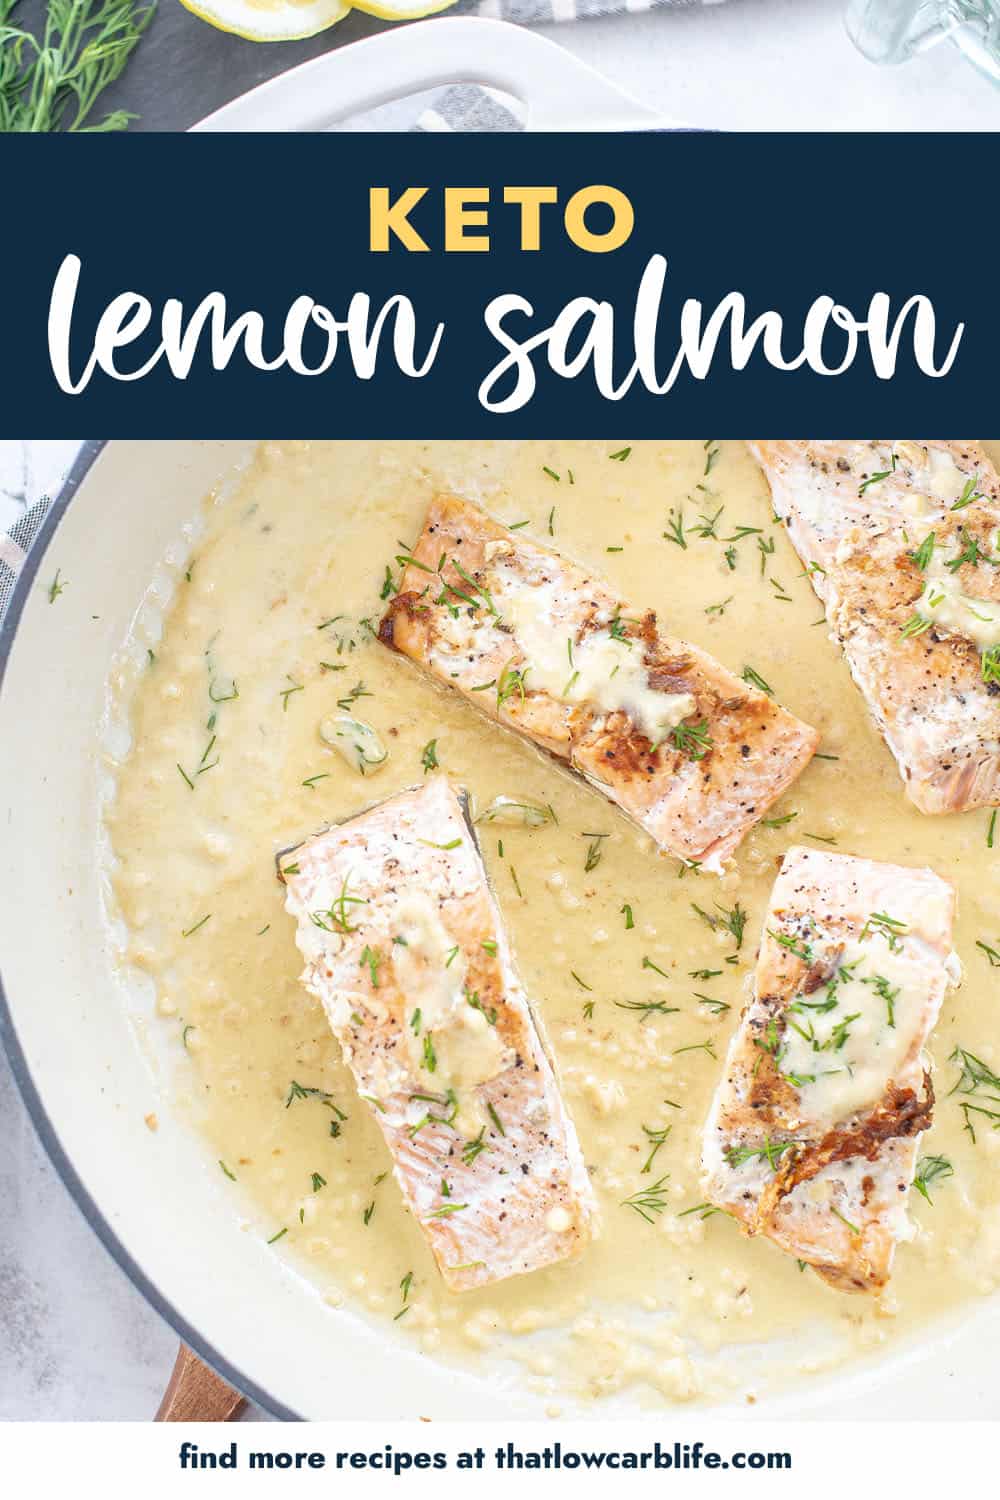 keto lemon salmon recipe in skillet.